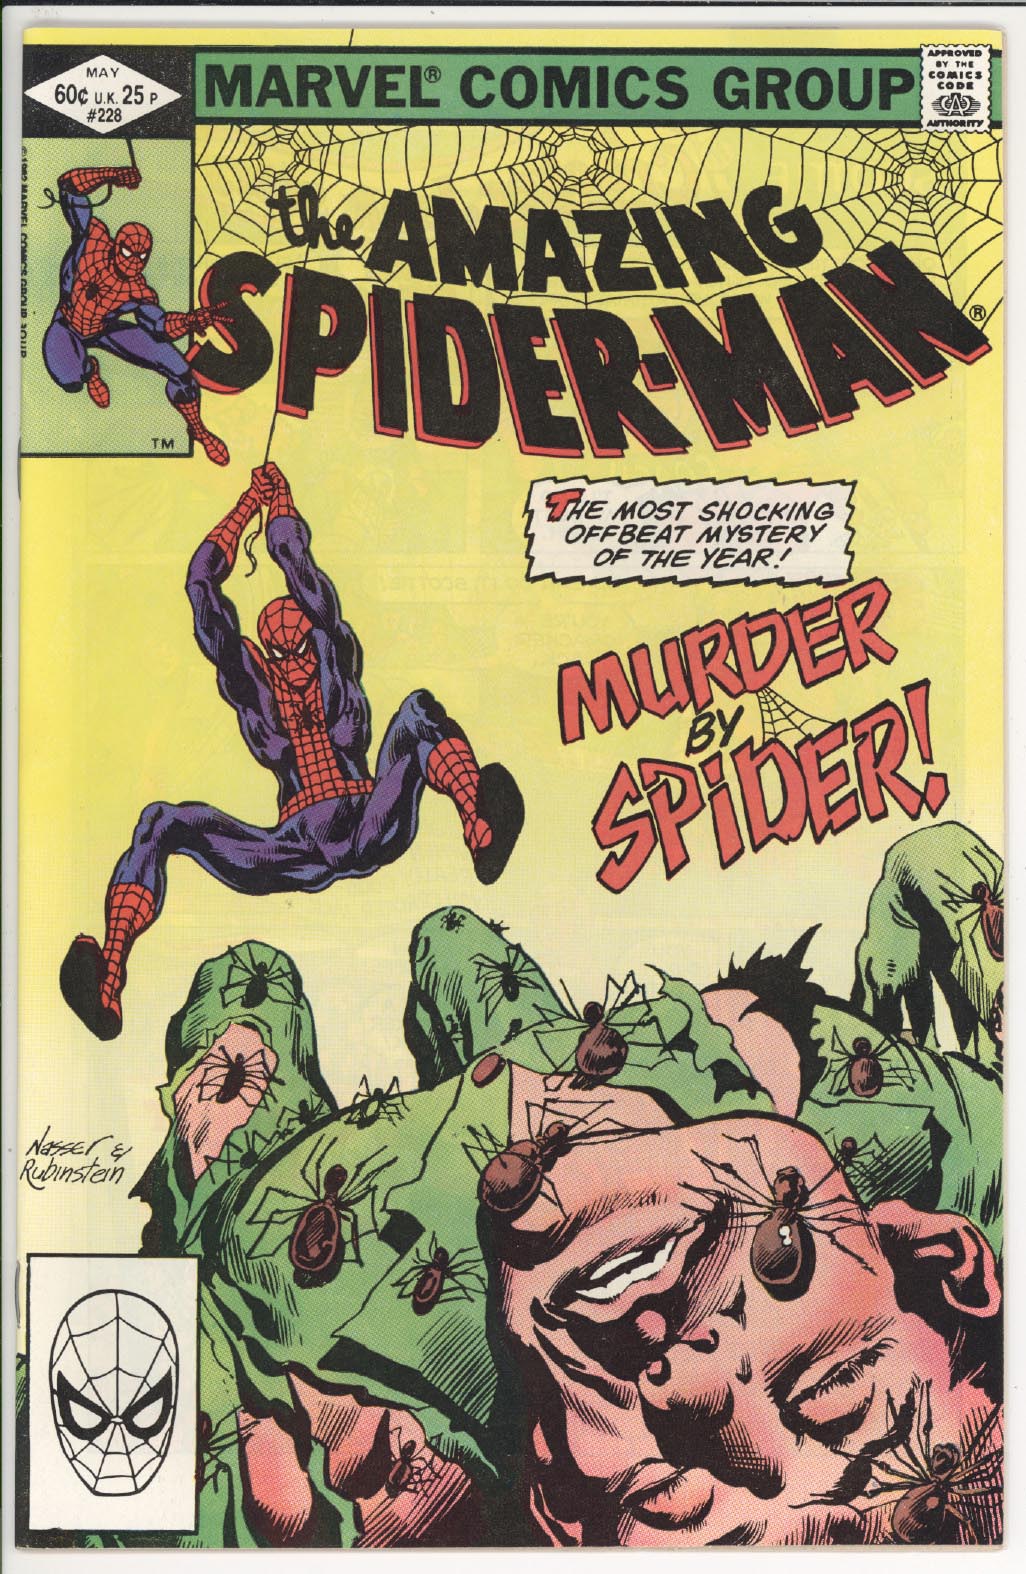 Amazing Spider-Man #228